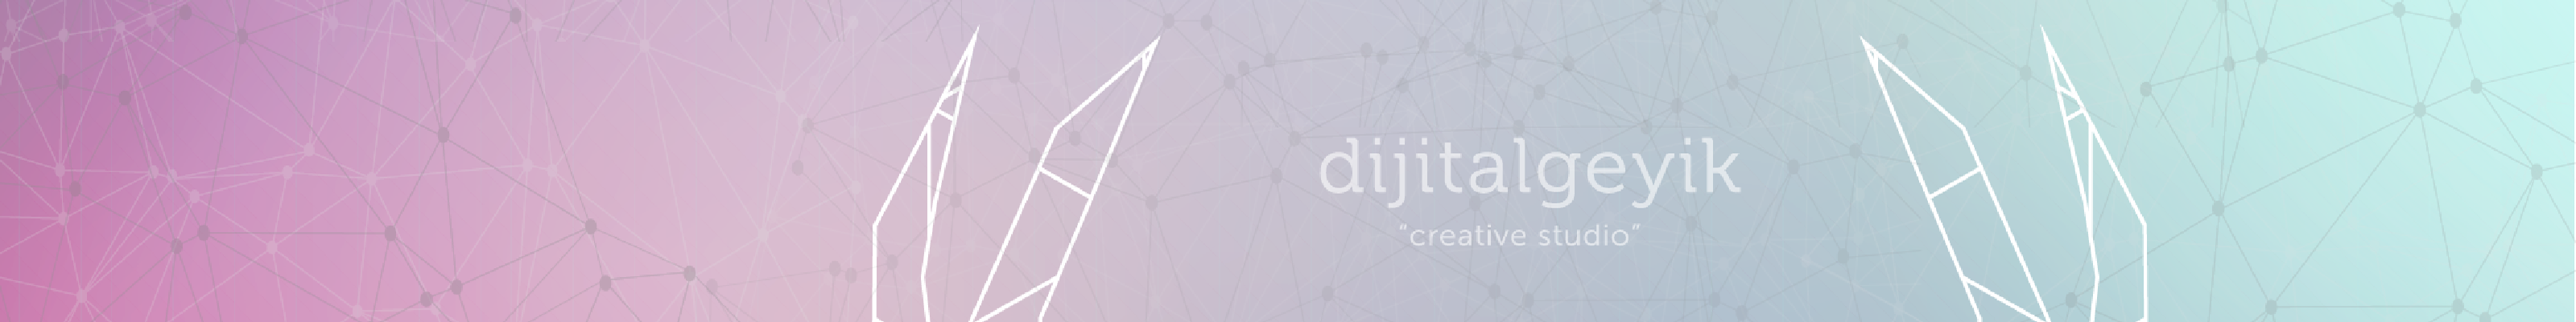 dijitalgeyik creative studio's profile banner